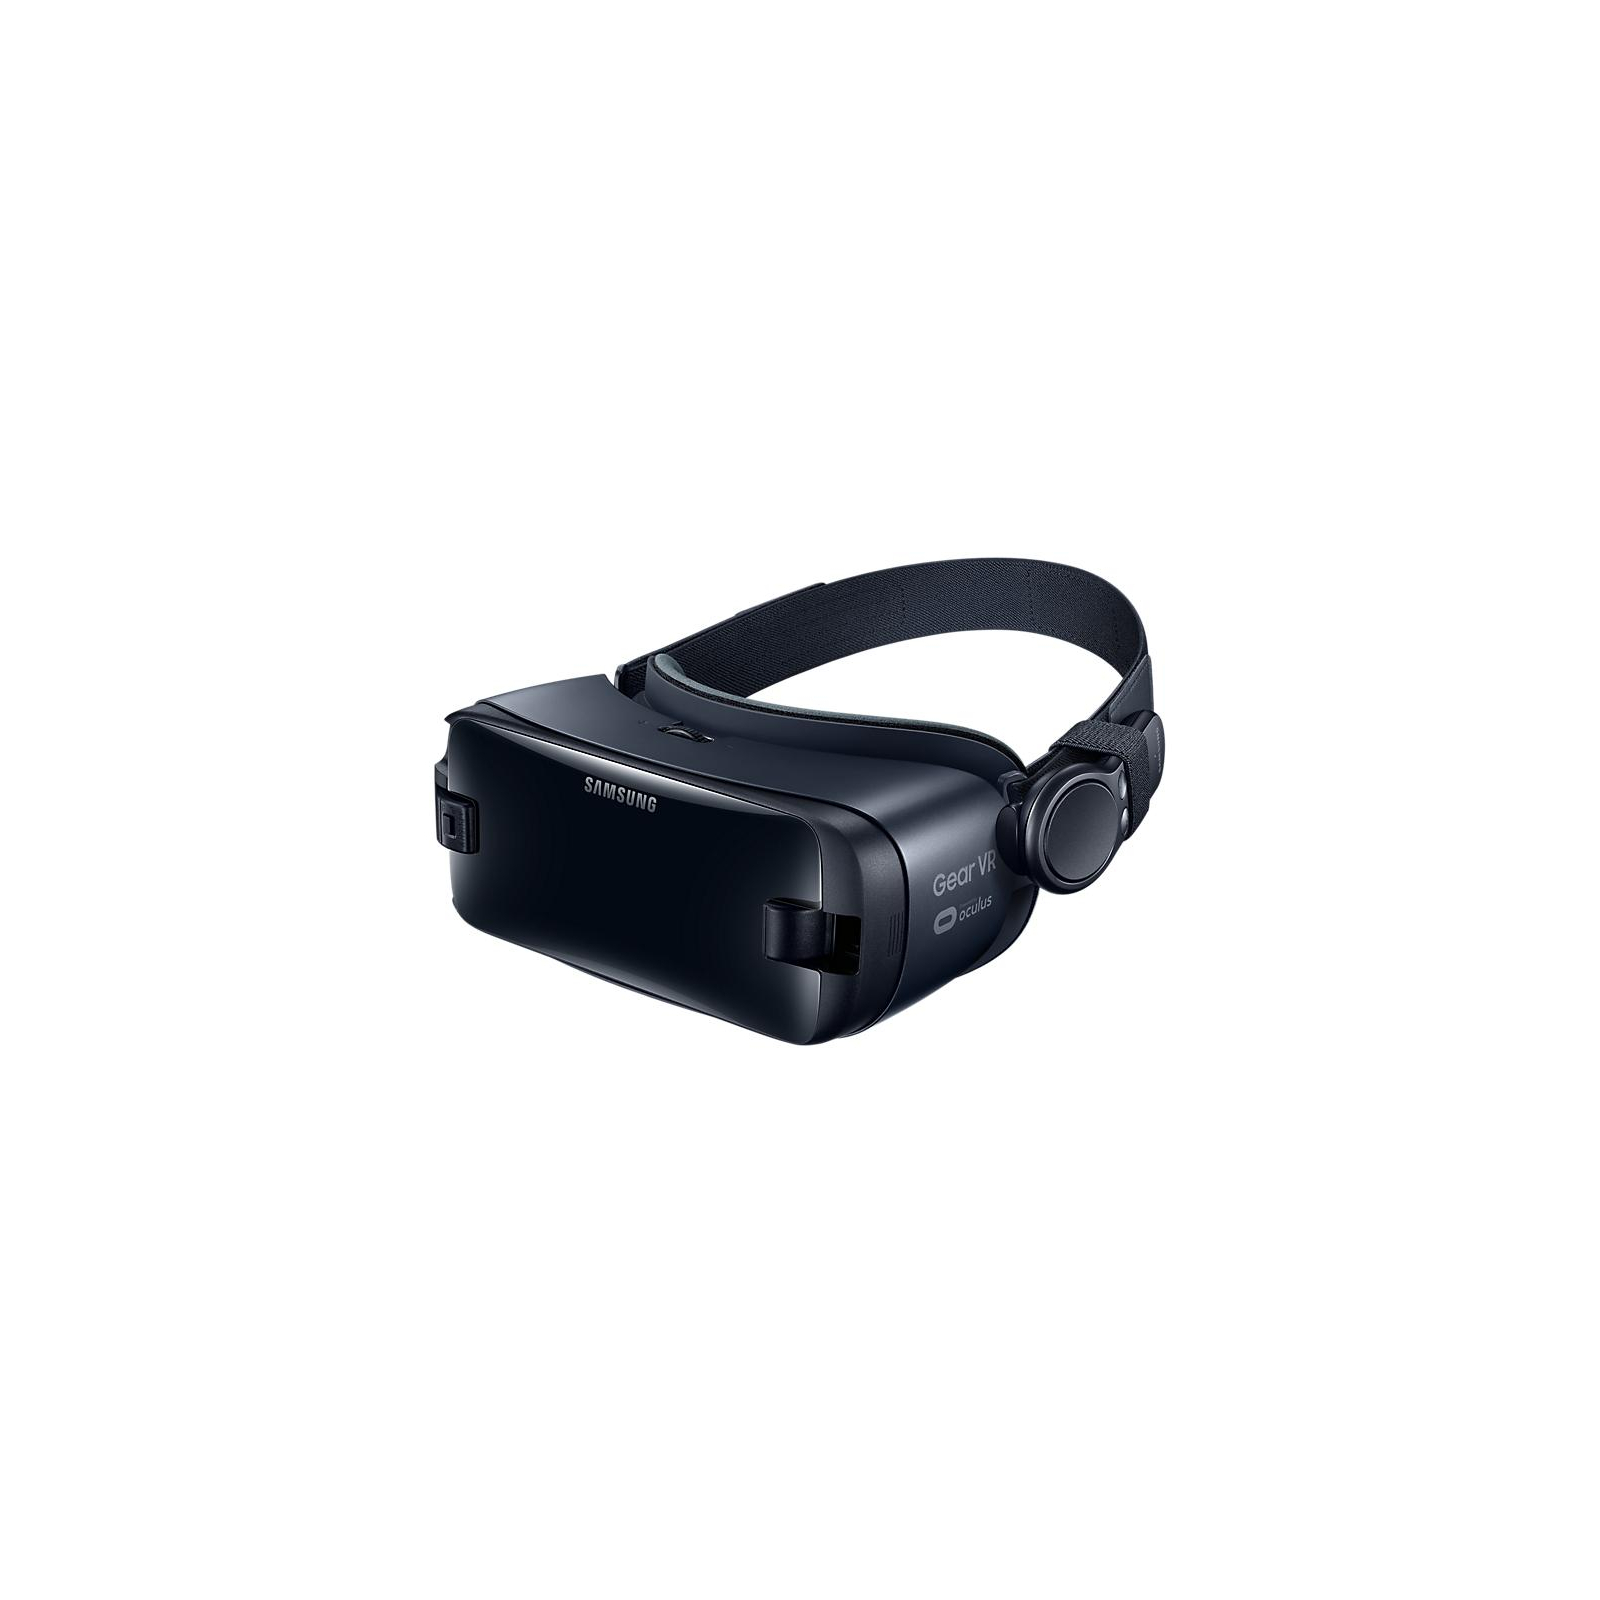 Очки виртуальной реальности Samsung Gear VR SM-R325 + controller ORCHID GRAY (SM-R325NZVASEK) изображение 2